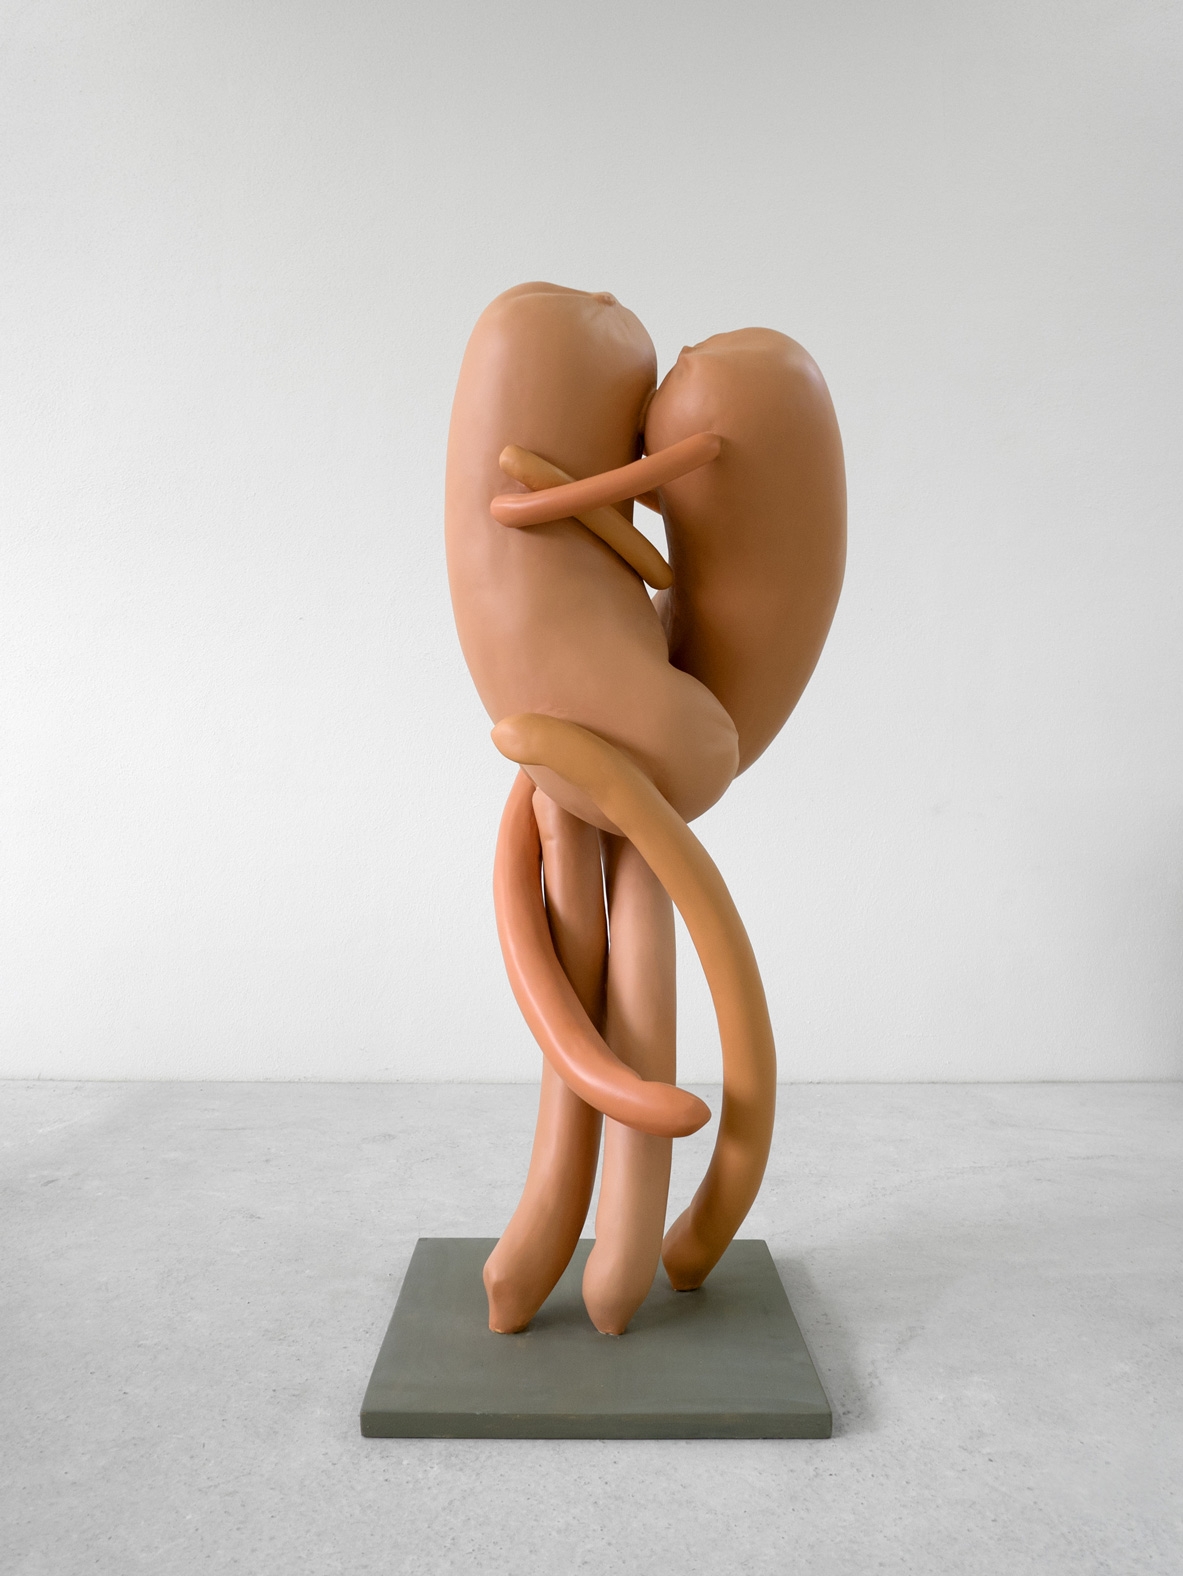 ERWIN WURM, Abstract sculptures (Kiss), 2015